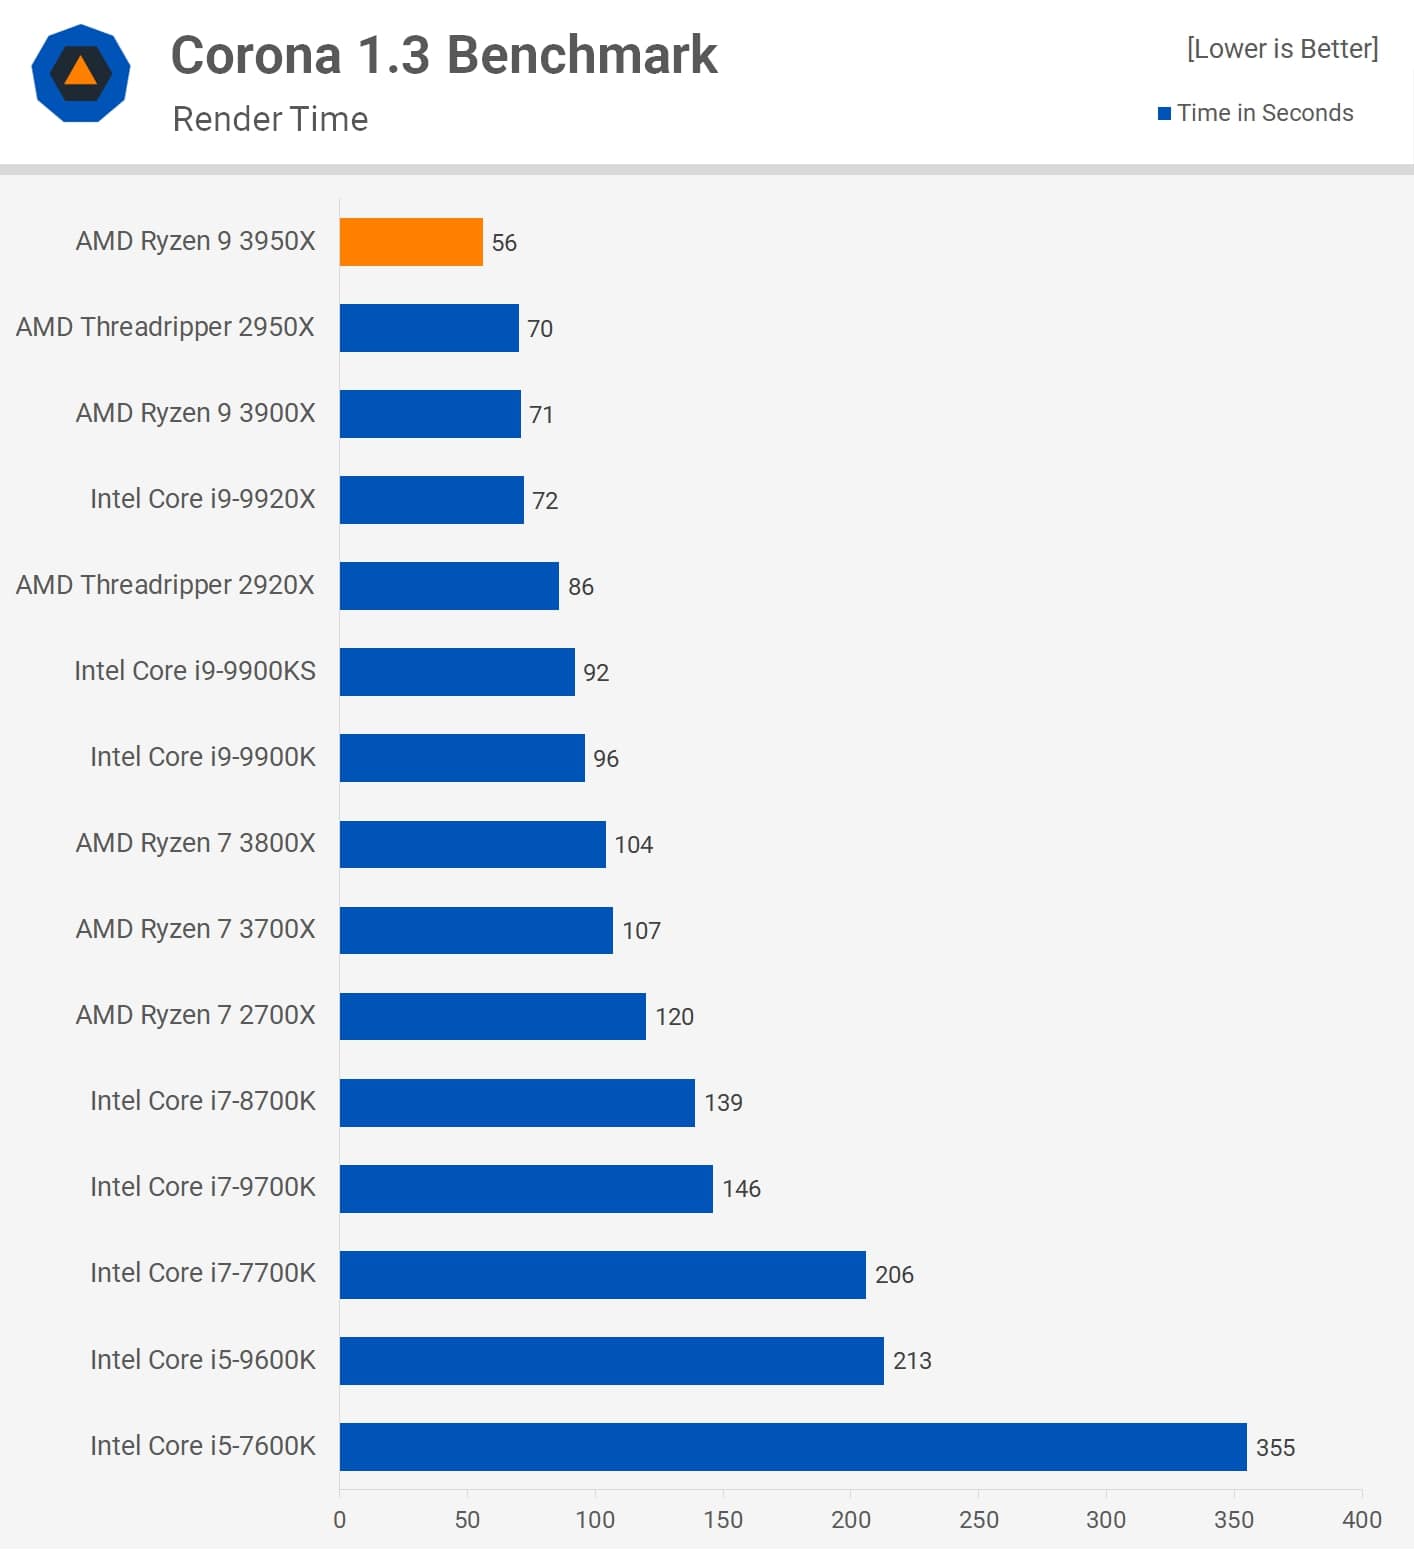 Corona Benchmark. Wynik w sekundach – mniej = lepiej - Recenzje AMD Ryzen 9 3950X – nowy król wydajności - wiadomość - 2019-11-15